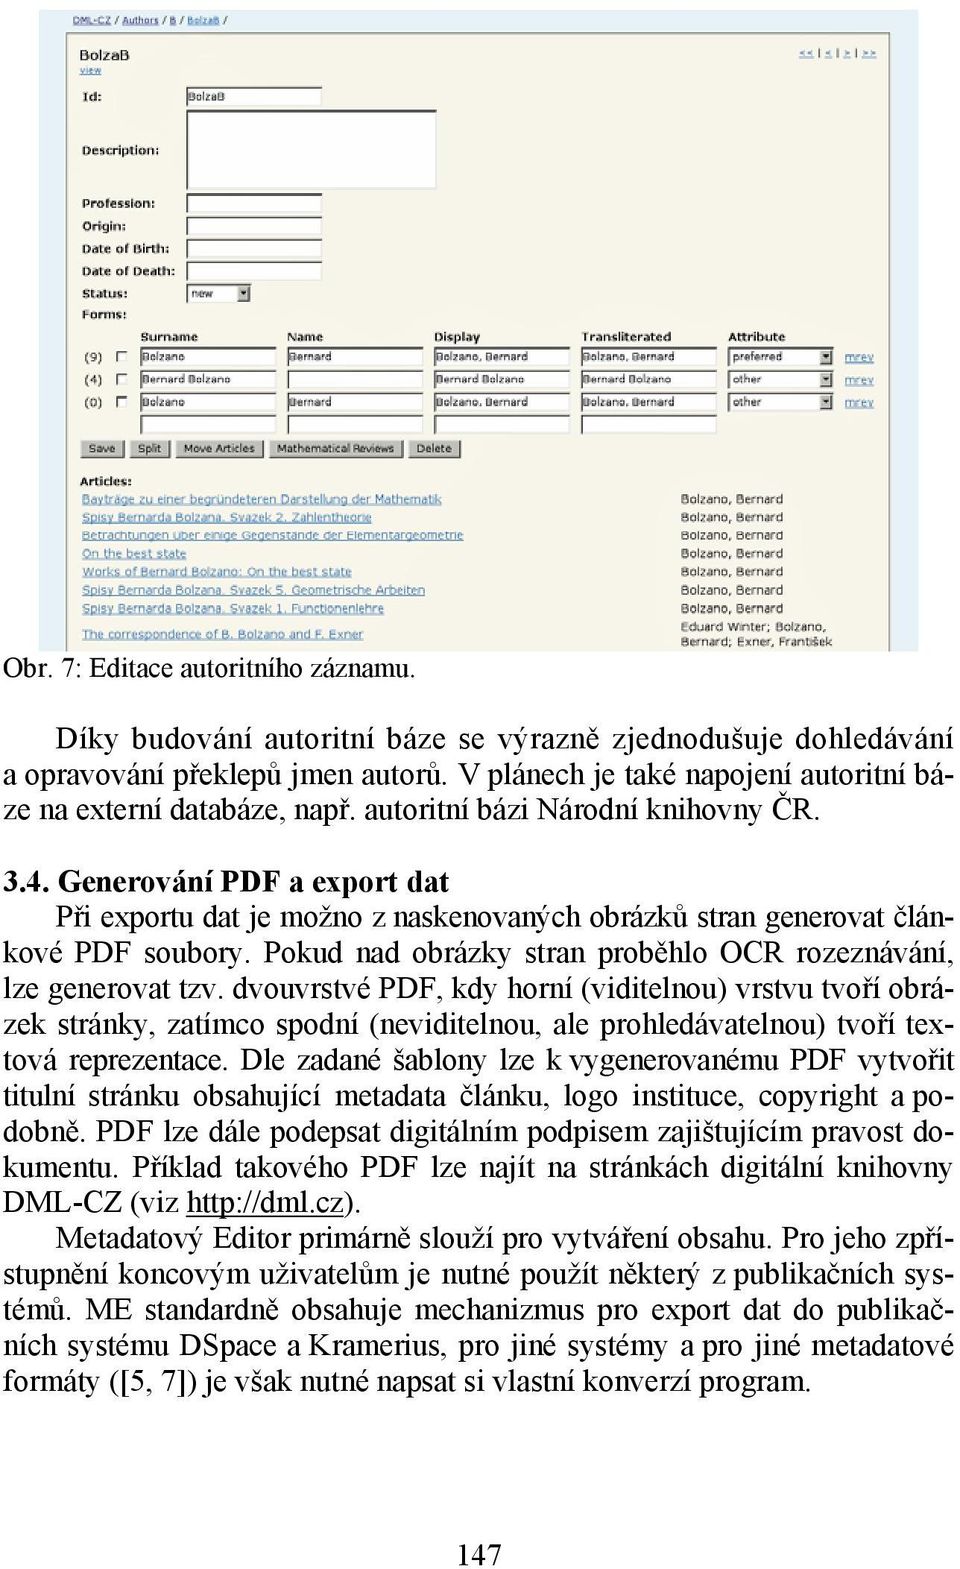 Generování PDF a export dat Při exportu dat je možno z naskenovaných obrázků stran generovat článkové PDF soubory. Pokud nad obrázky stran proběhlo OCR rozeznávání, lze generovat tzv.